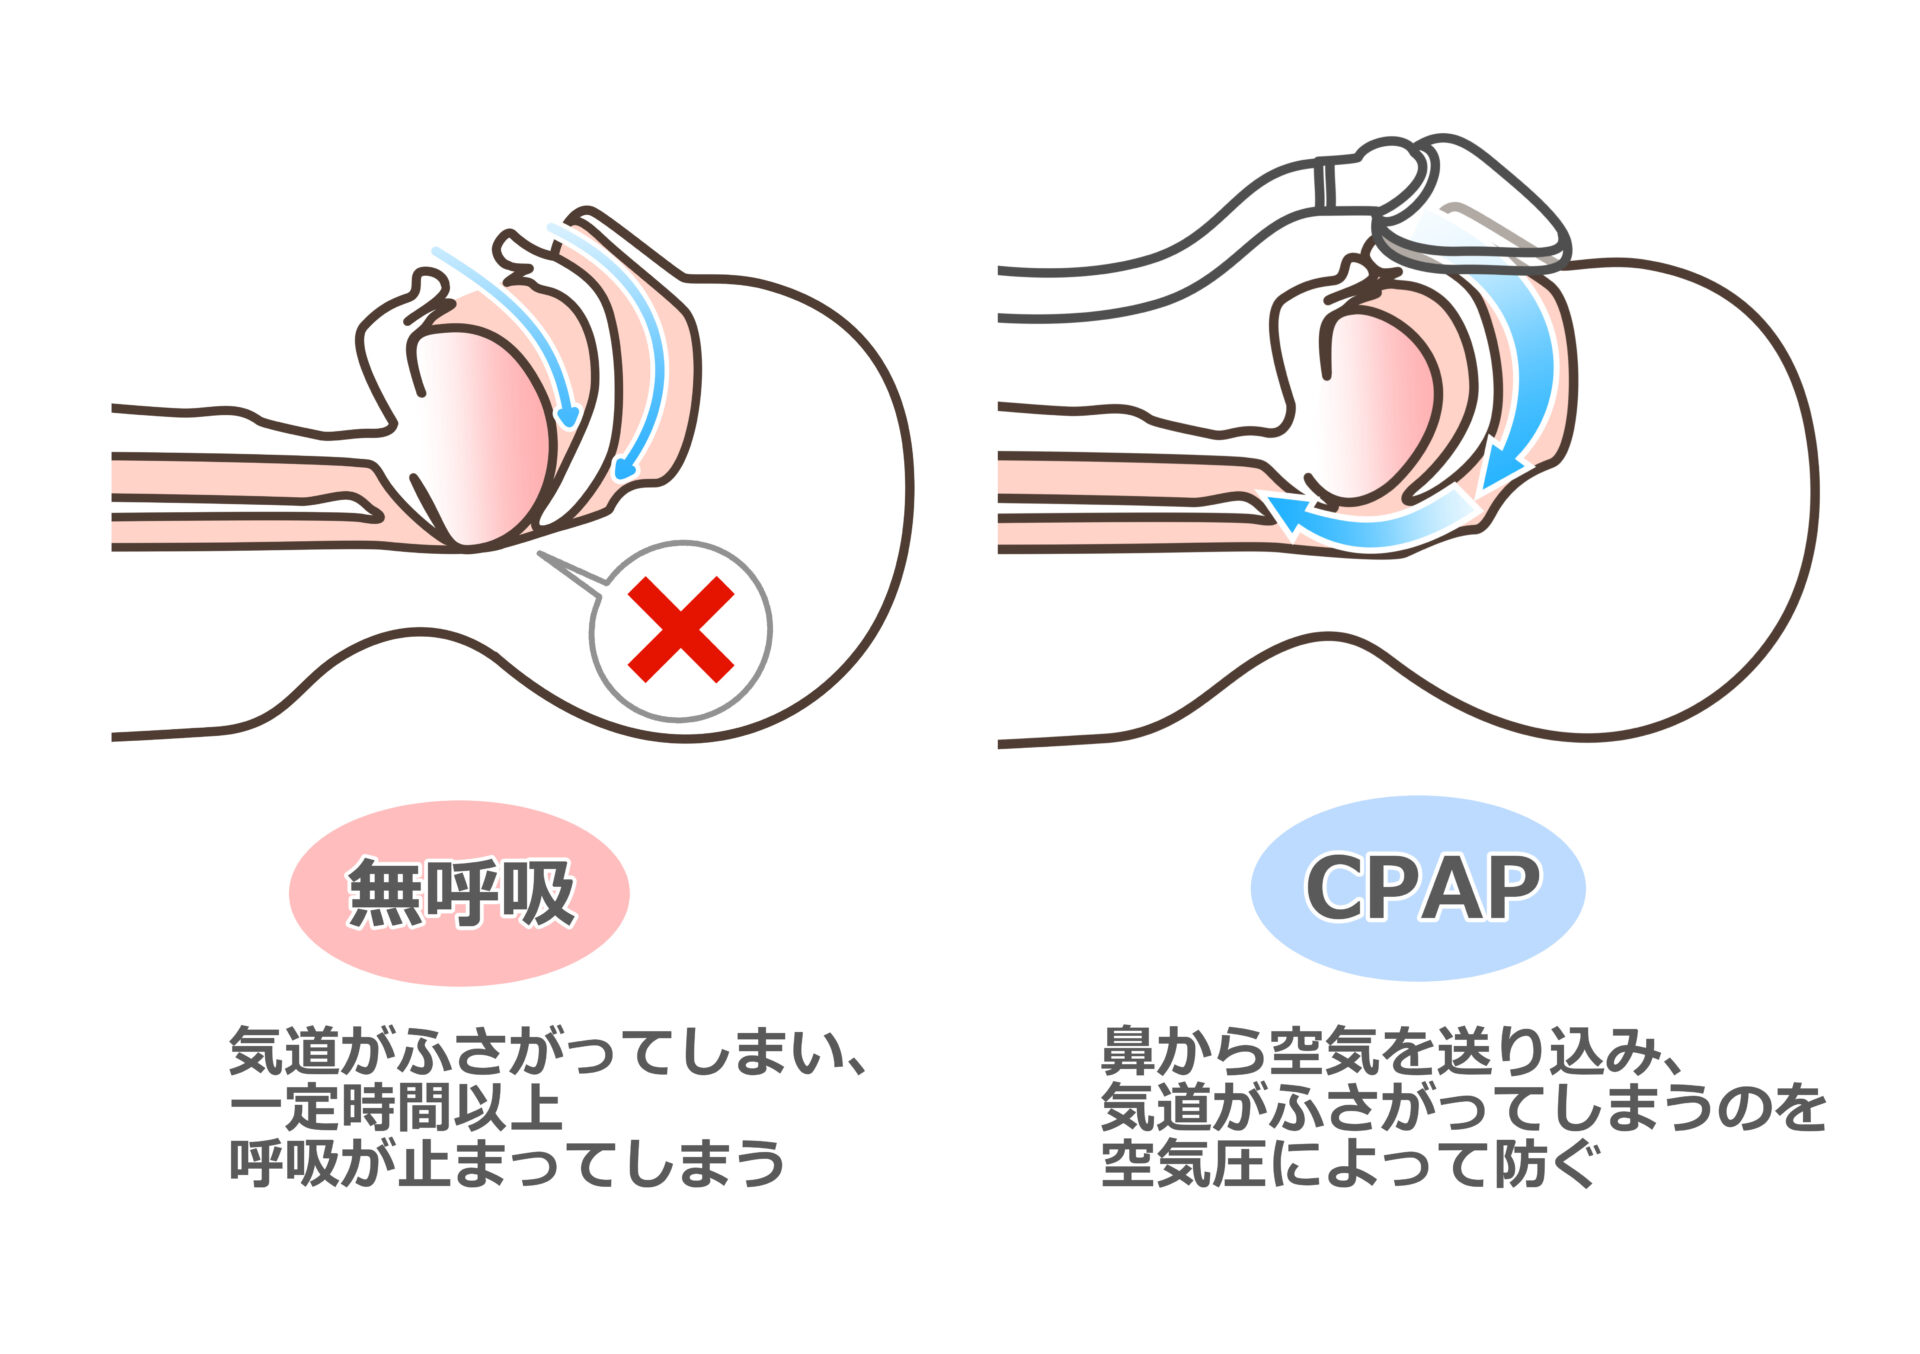 【図】無呼吸では気道がふさがってしまい、一定時間以上呼吸が止まってしまう。CPAP：鼻から空気を送り込み、気道がふさがってしまうのを空気圧によって防ぐ